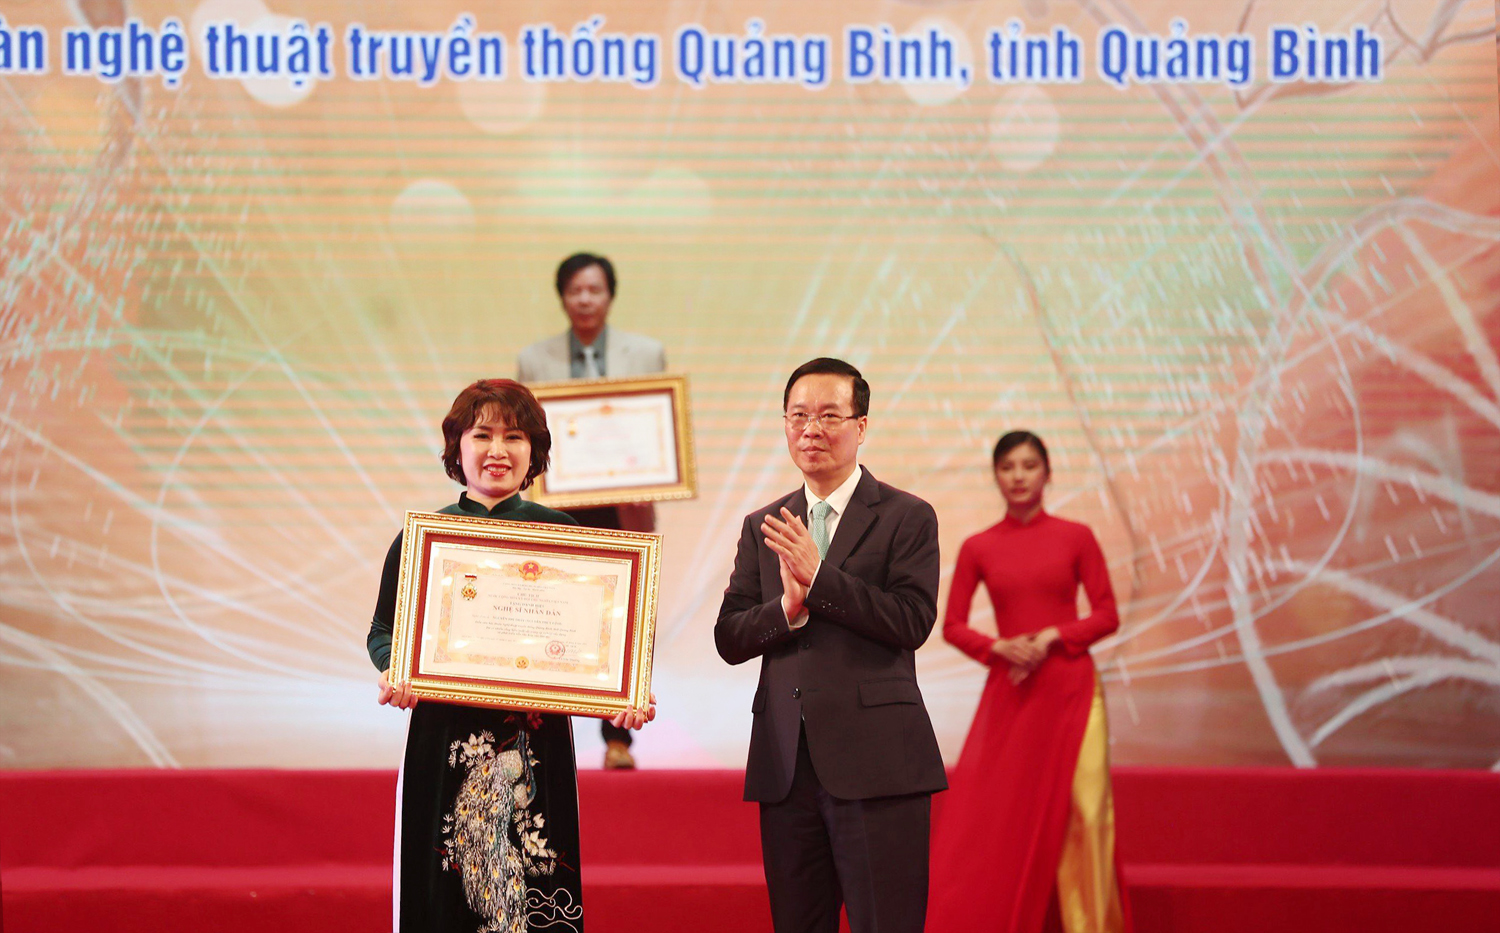 Chủ tịch nước Võ Văn Thưởng trao tặng danh hiệu “Nghệ sĩ nhân dân” cho diễn viên hát Nguyễn Thị Thấy (Đoàn Nghệ thuật truyền thống Quảng Bình).